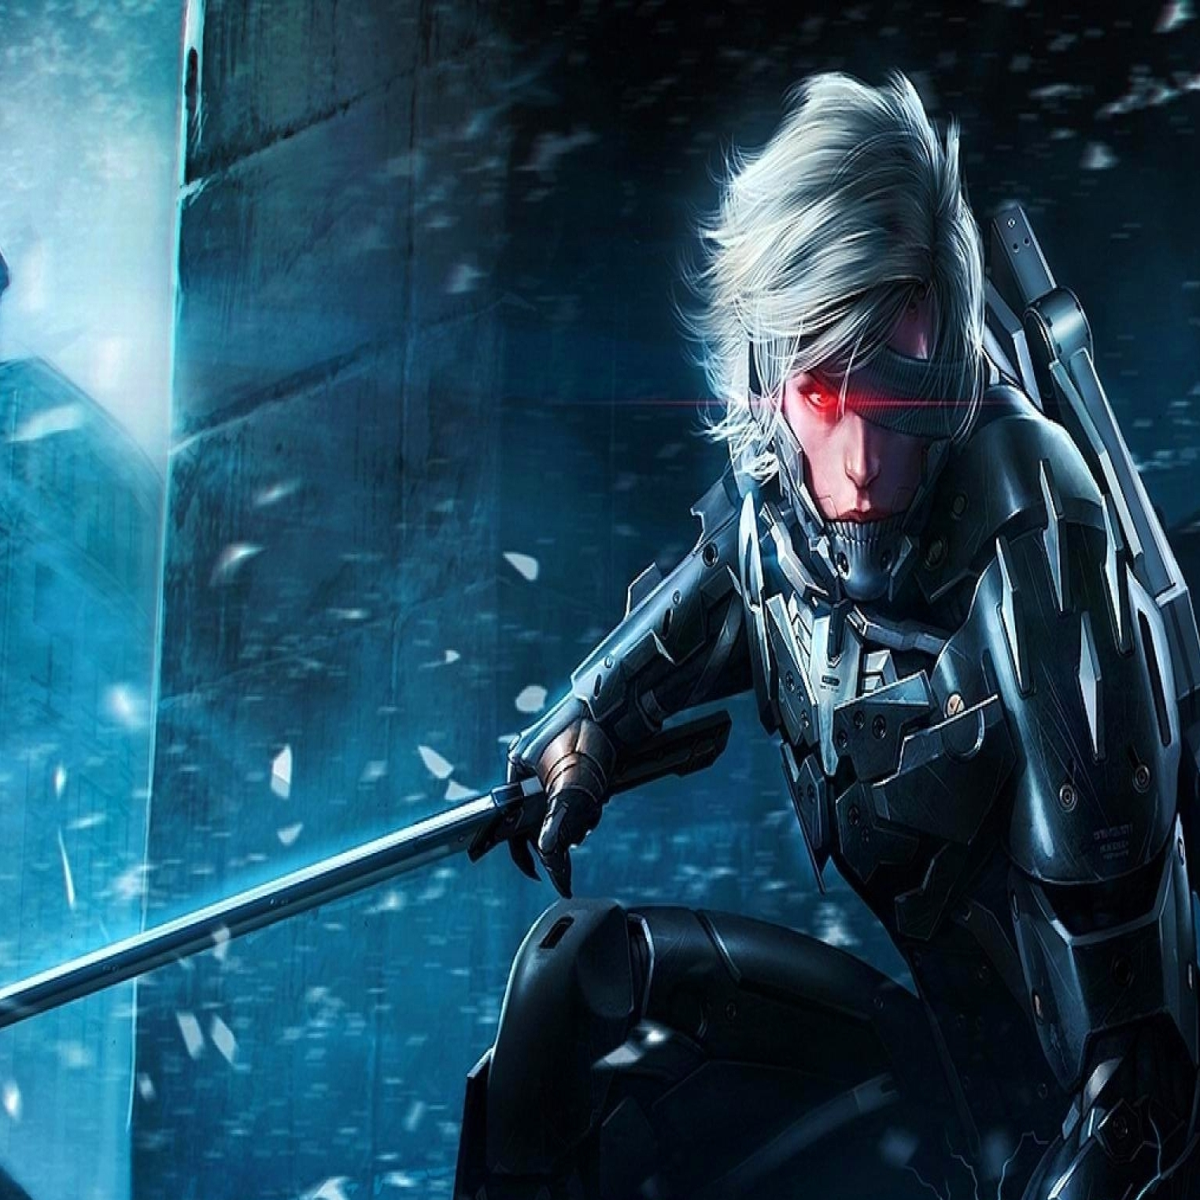 New Metal Gear Rising boss fight gameplay video - Metal Gear Informer